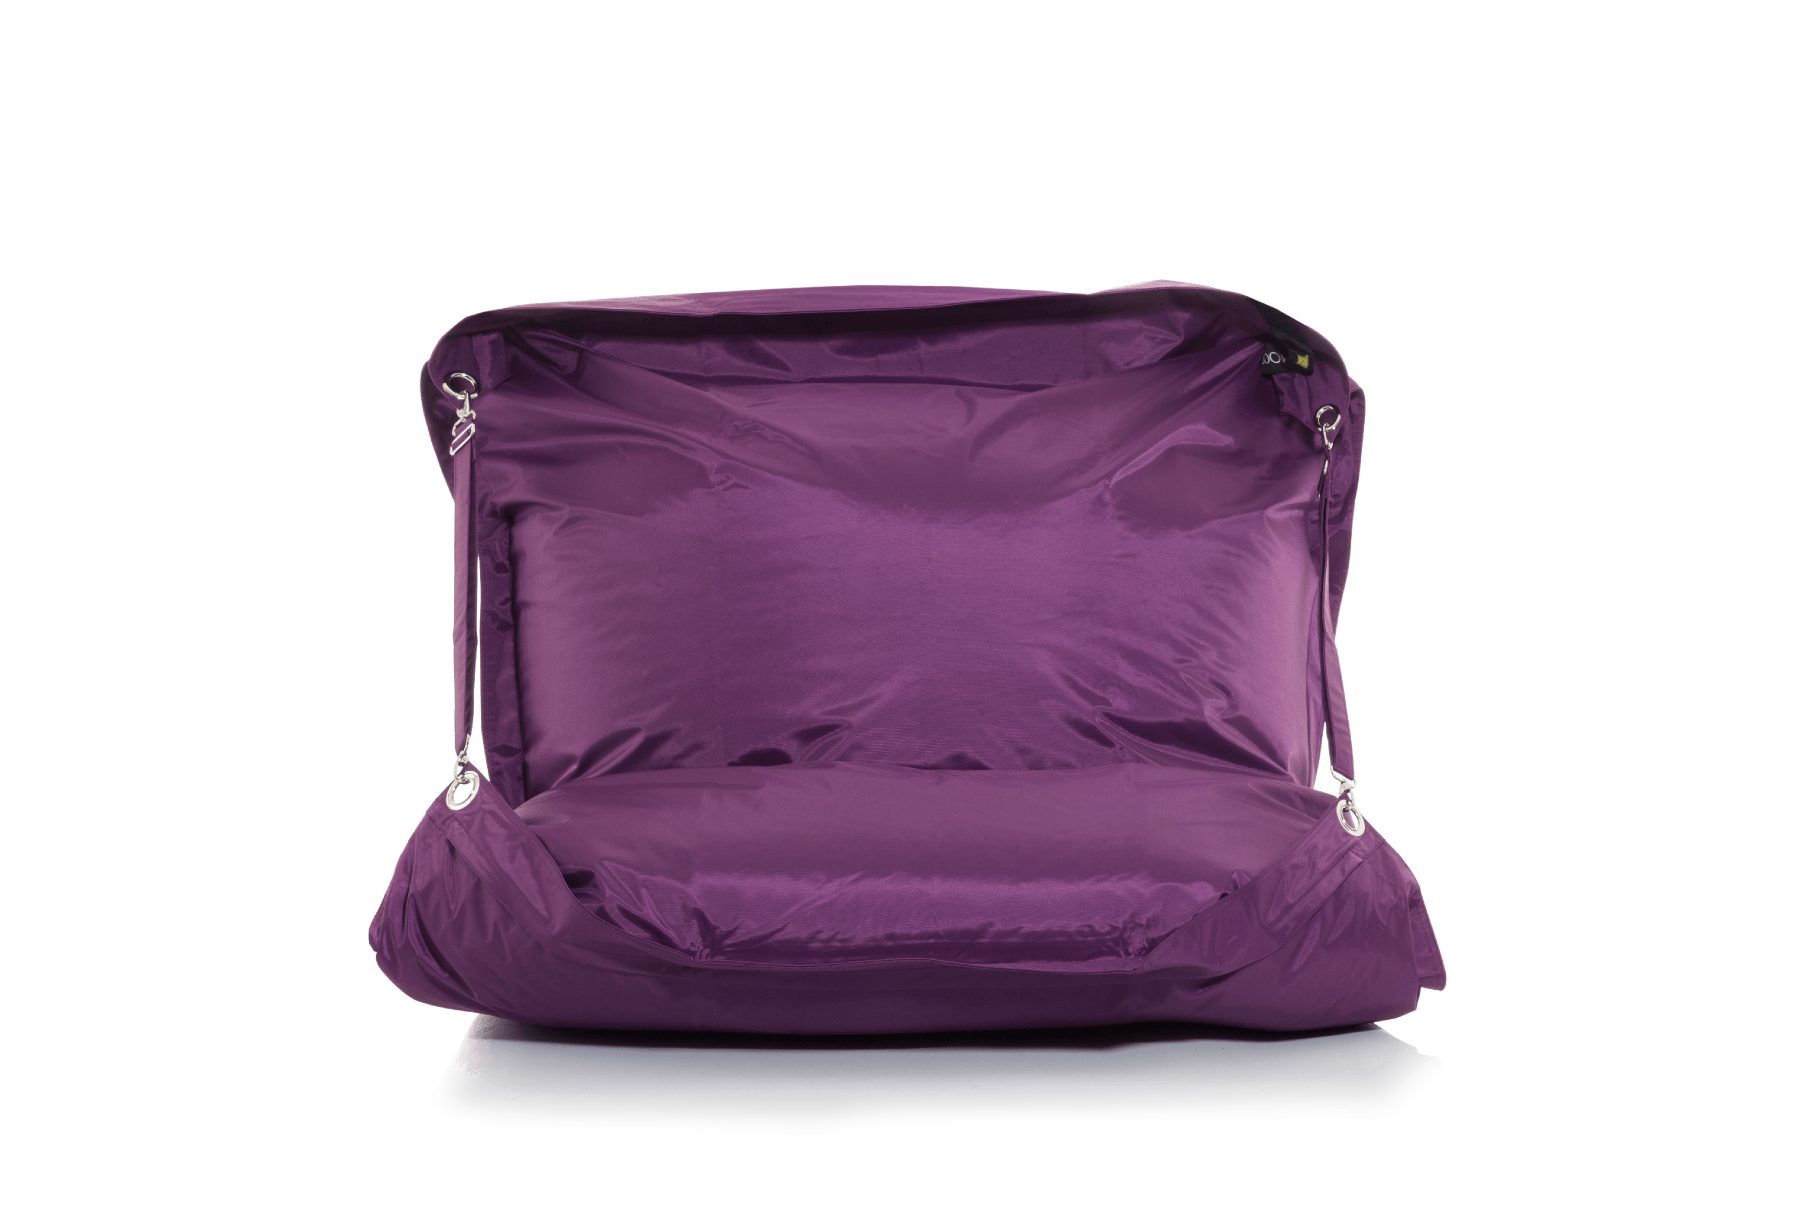 Erwachsene 450L Sitzsack (Riesensitzsack, für Bean-Bag XXL Outdoor & Kinder Smoothy Sessel), Amethyst-Violett Indoor Supreme & Sitzkissen Sitzsack